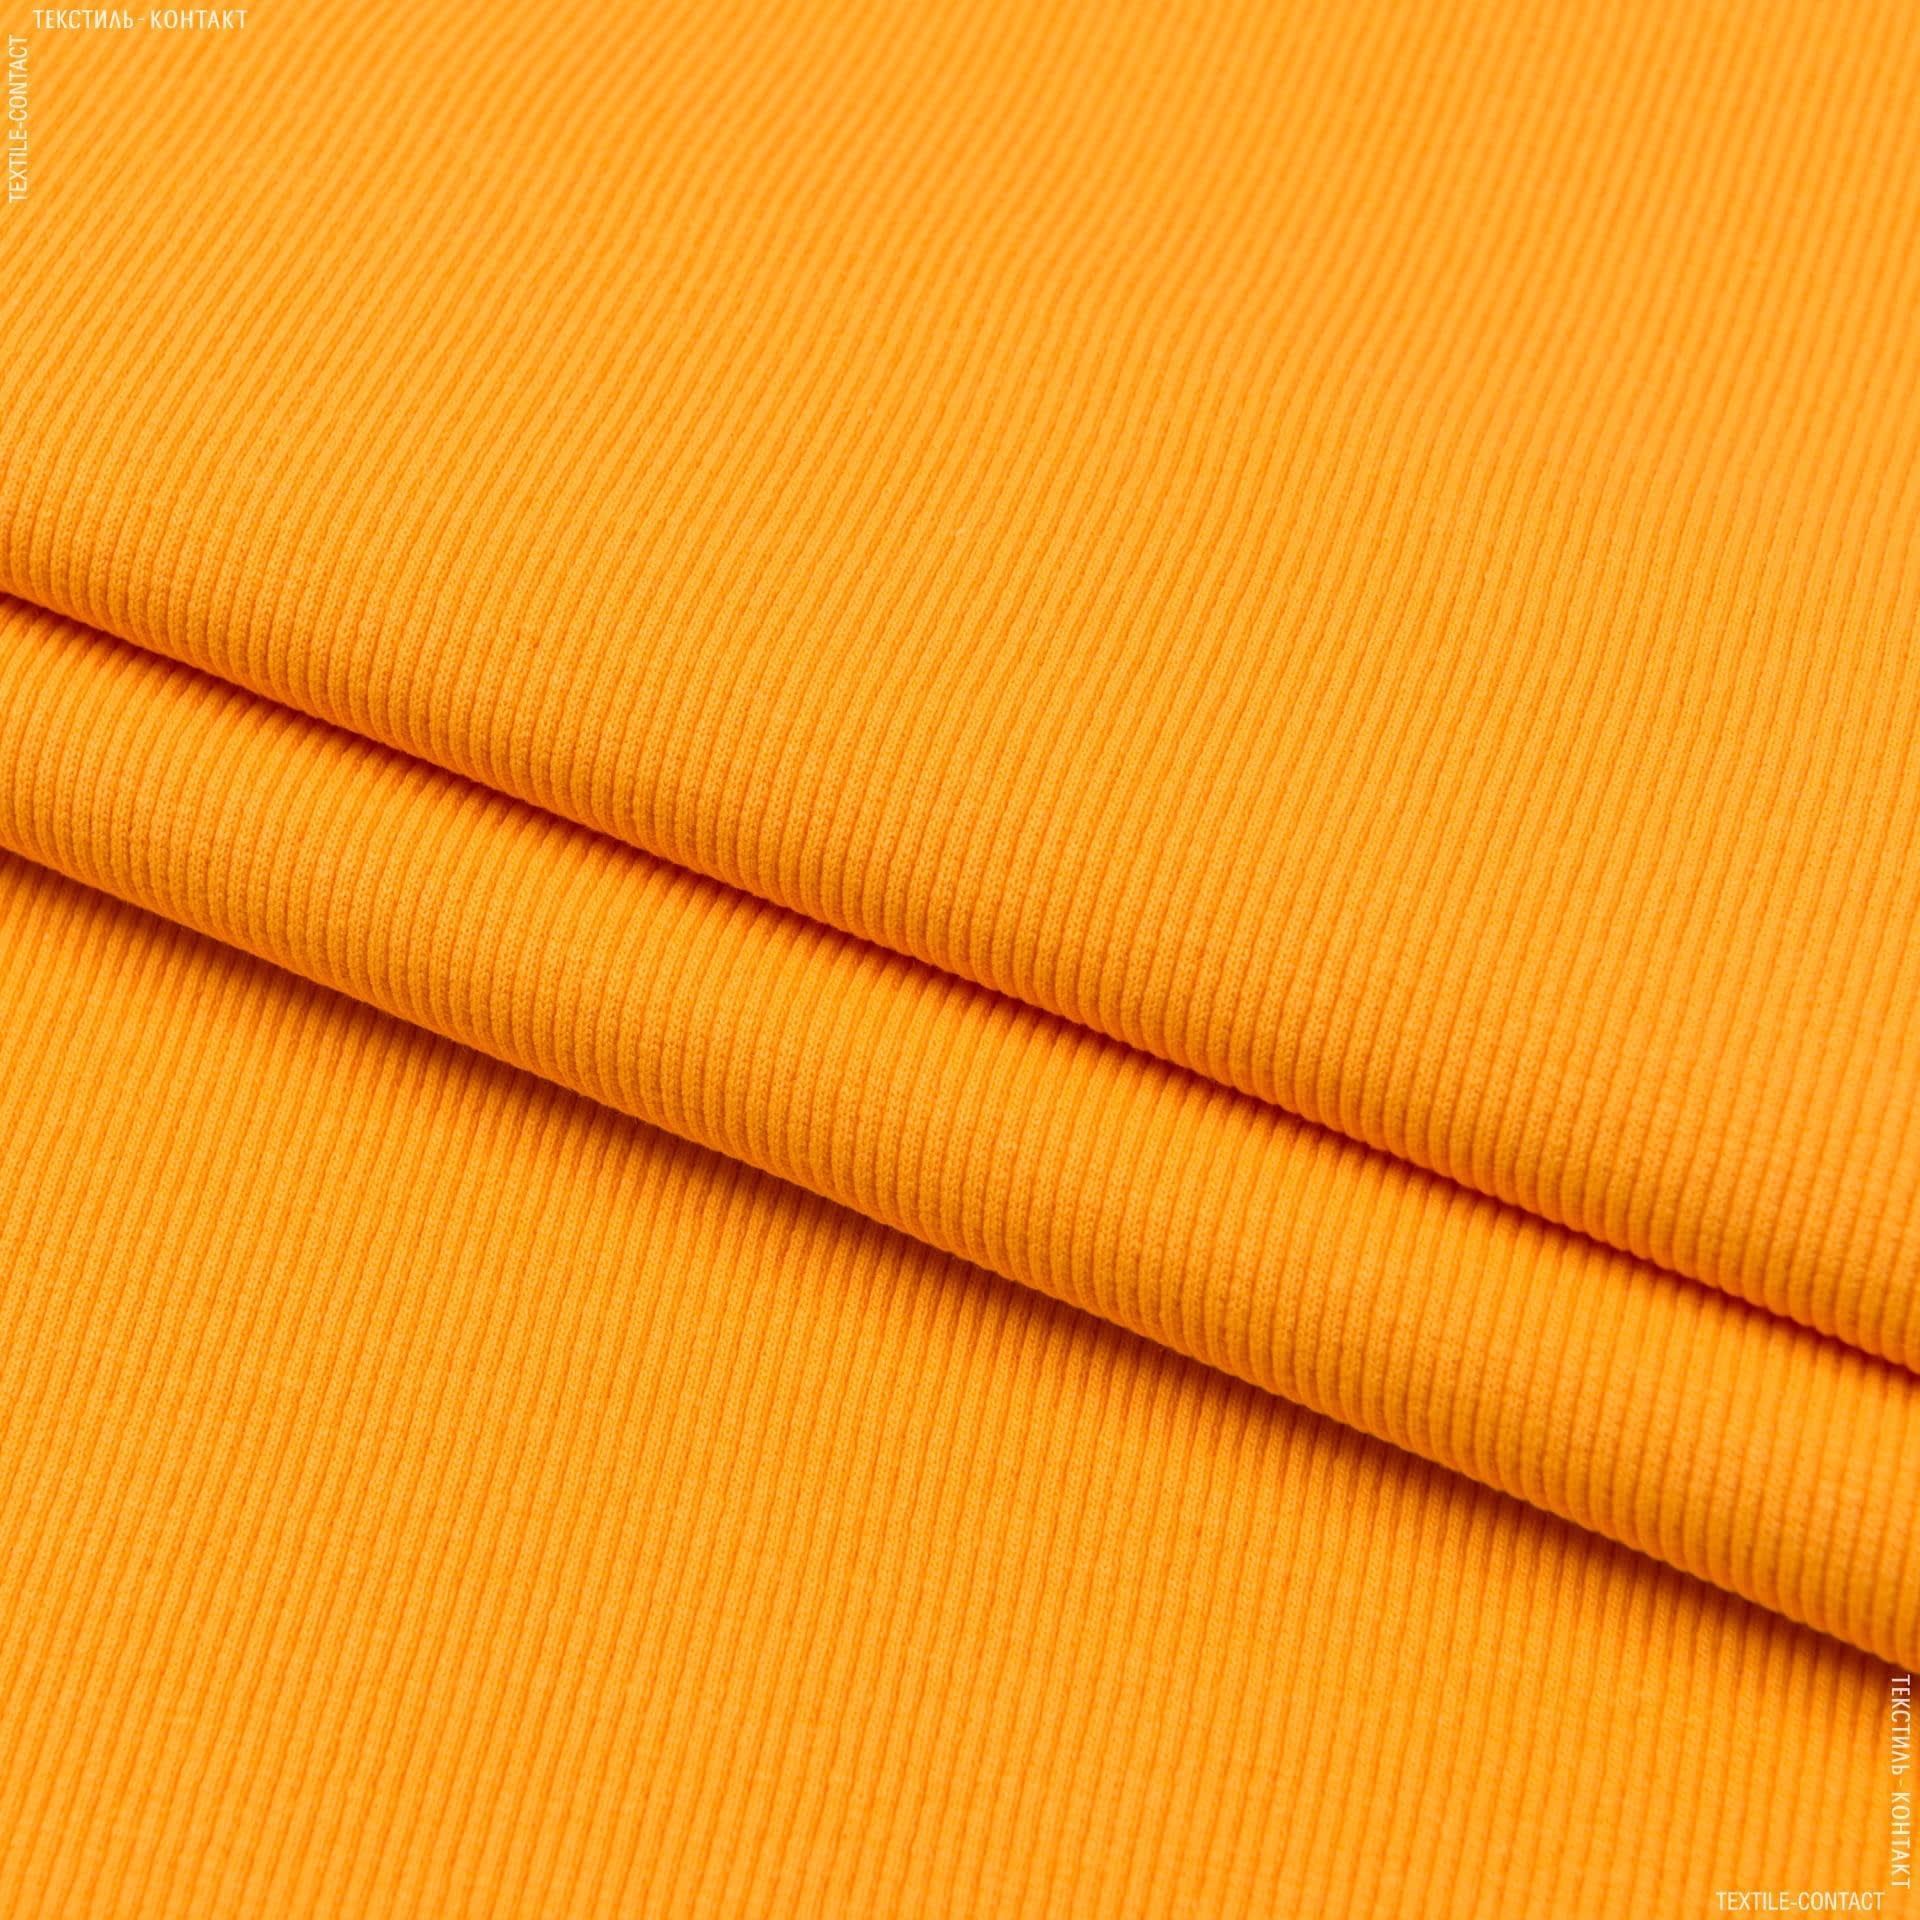 Ткани для спортивной одежды - Рибана к футеру  65см*2 желтая